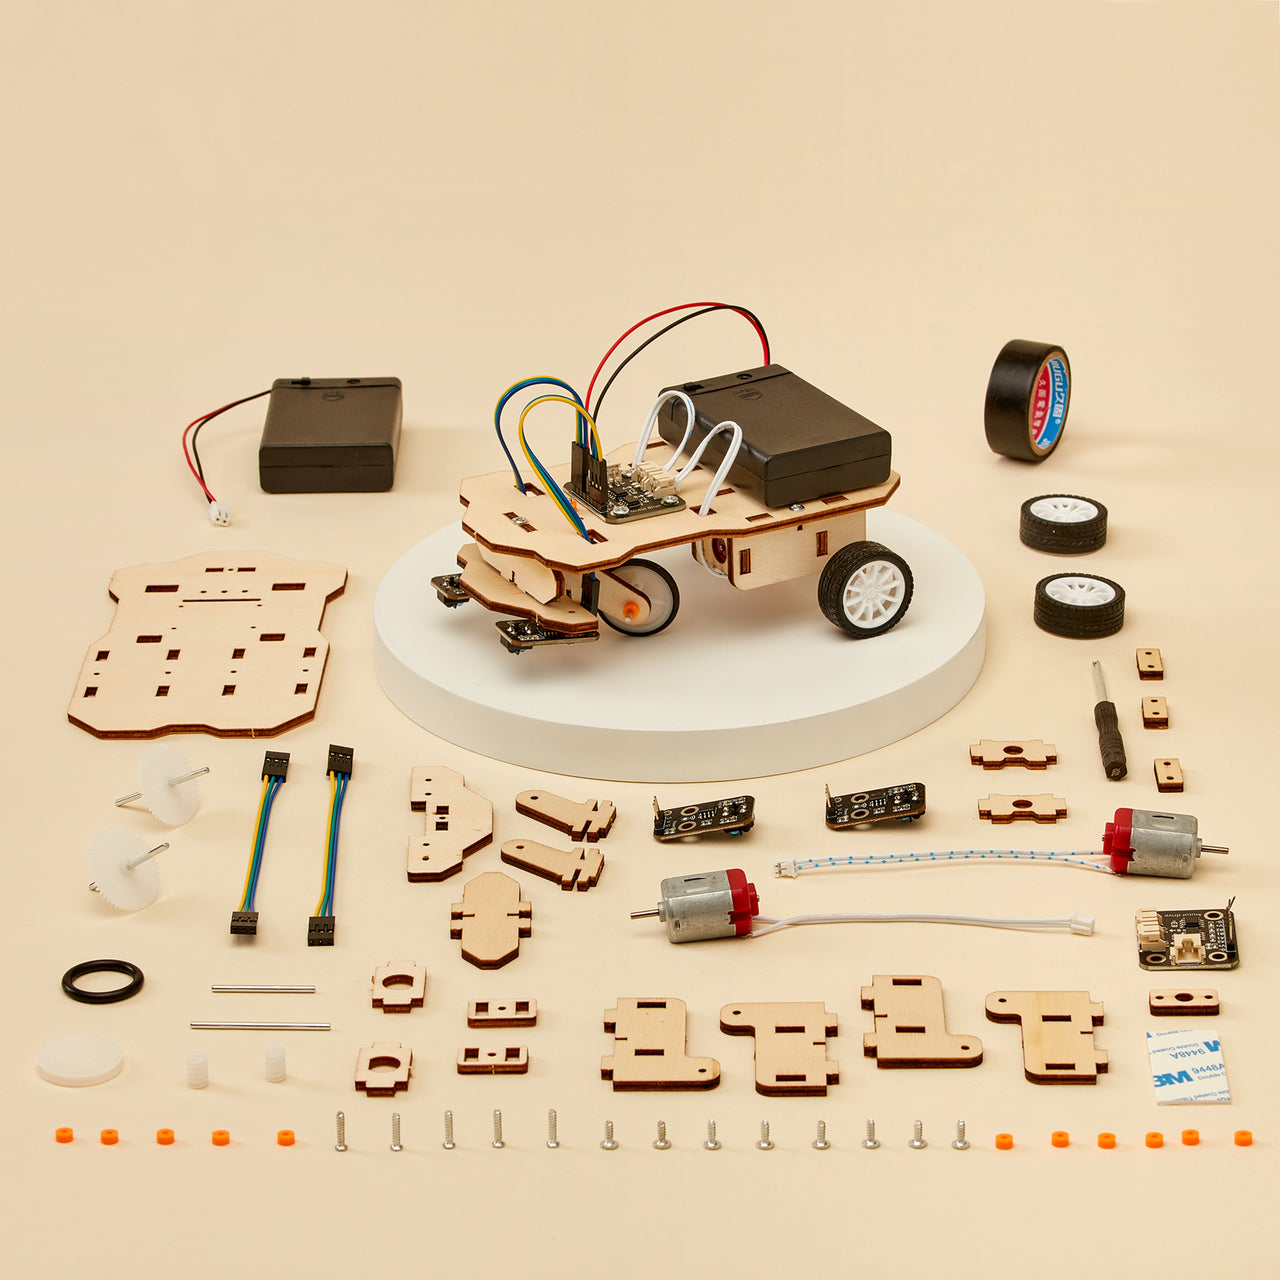 Kit de bricolaje de robot seguidor de línea CreateKit